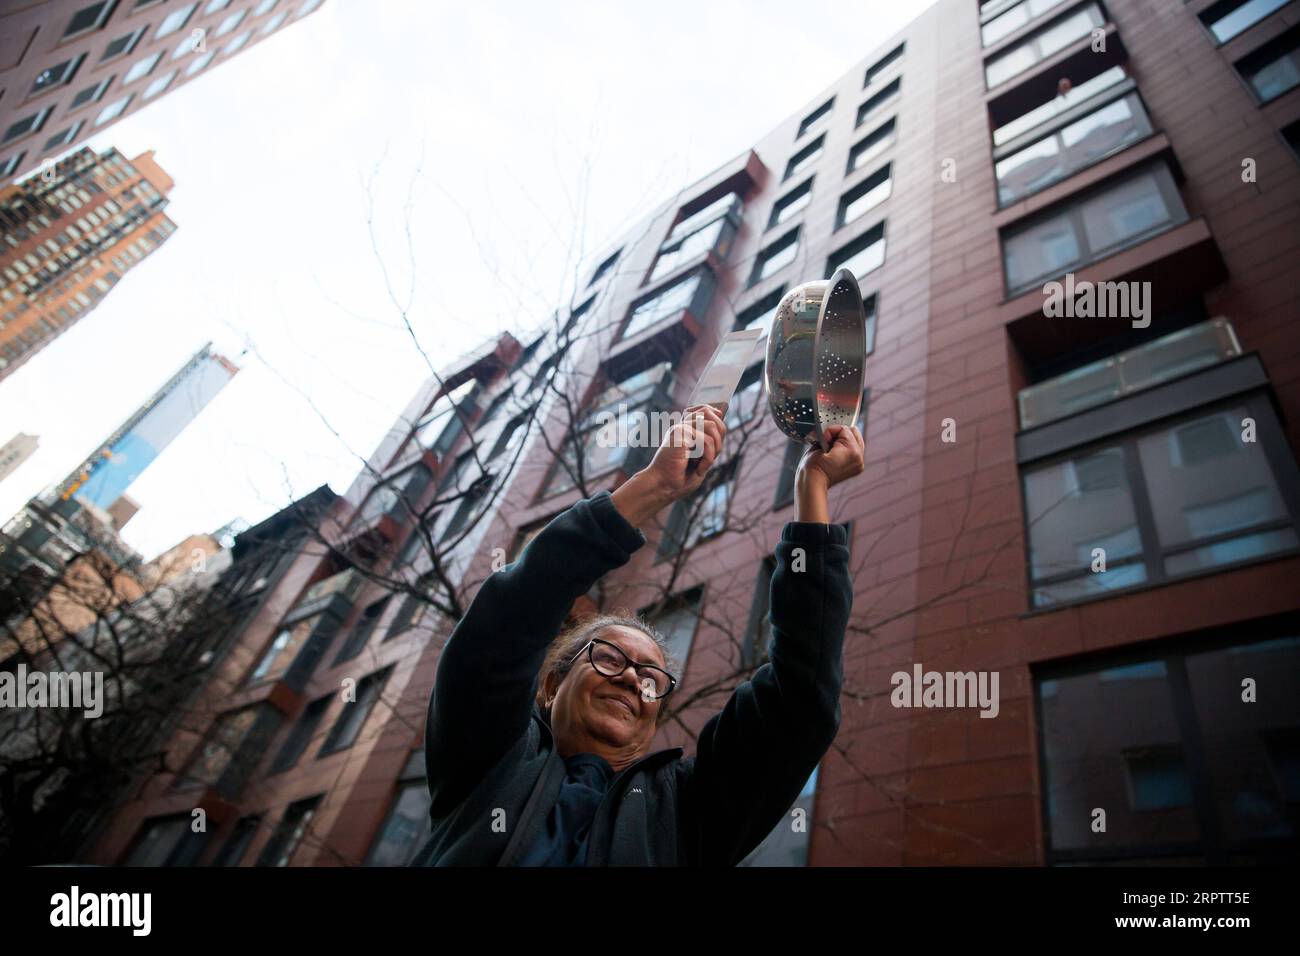 200418 -- PECHINO, 18 aprile 2020 -- Una donna sbatte un vaso per esprimere gratitudine e rispetto agli operatori sanitari fuori da un ospedale a New York, negli Stati Uniti, il 16 aprile 2020. Intorno alle 19.00, ogni sera, i newyorkesi applaudono e applaudono a tutti i lavoratori essenziali come segno di sostegno e apprezzamento durante la pandemia di COVID-19. Foto di / Xinhua XINHUA FOTO DEL GIORNO MichaelxNagle PUBLICATIONxNOTxINxCHN Foto Stock